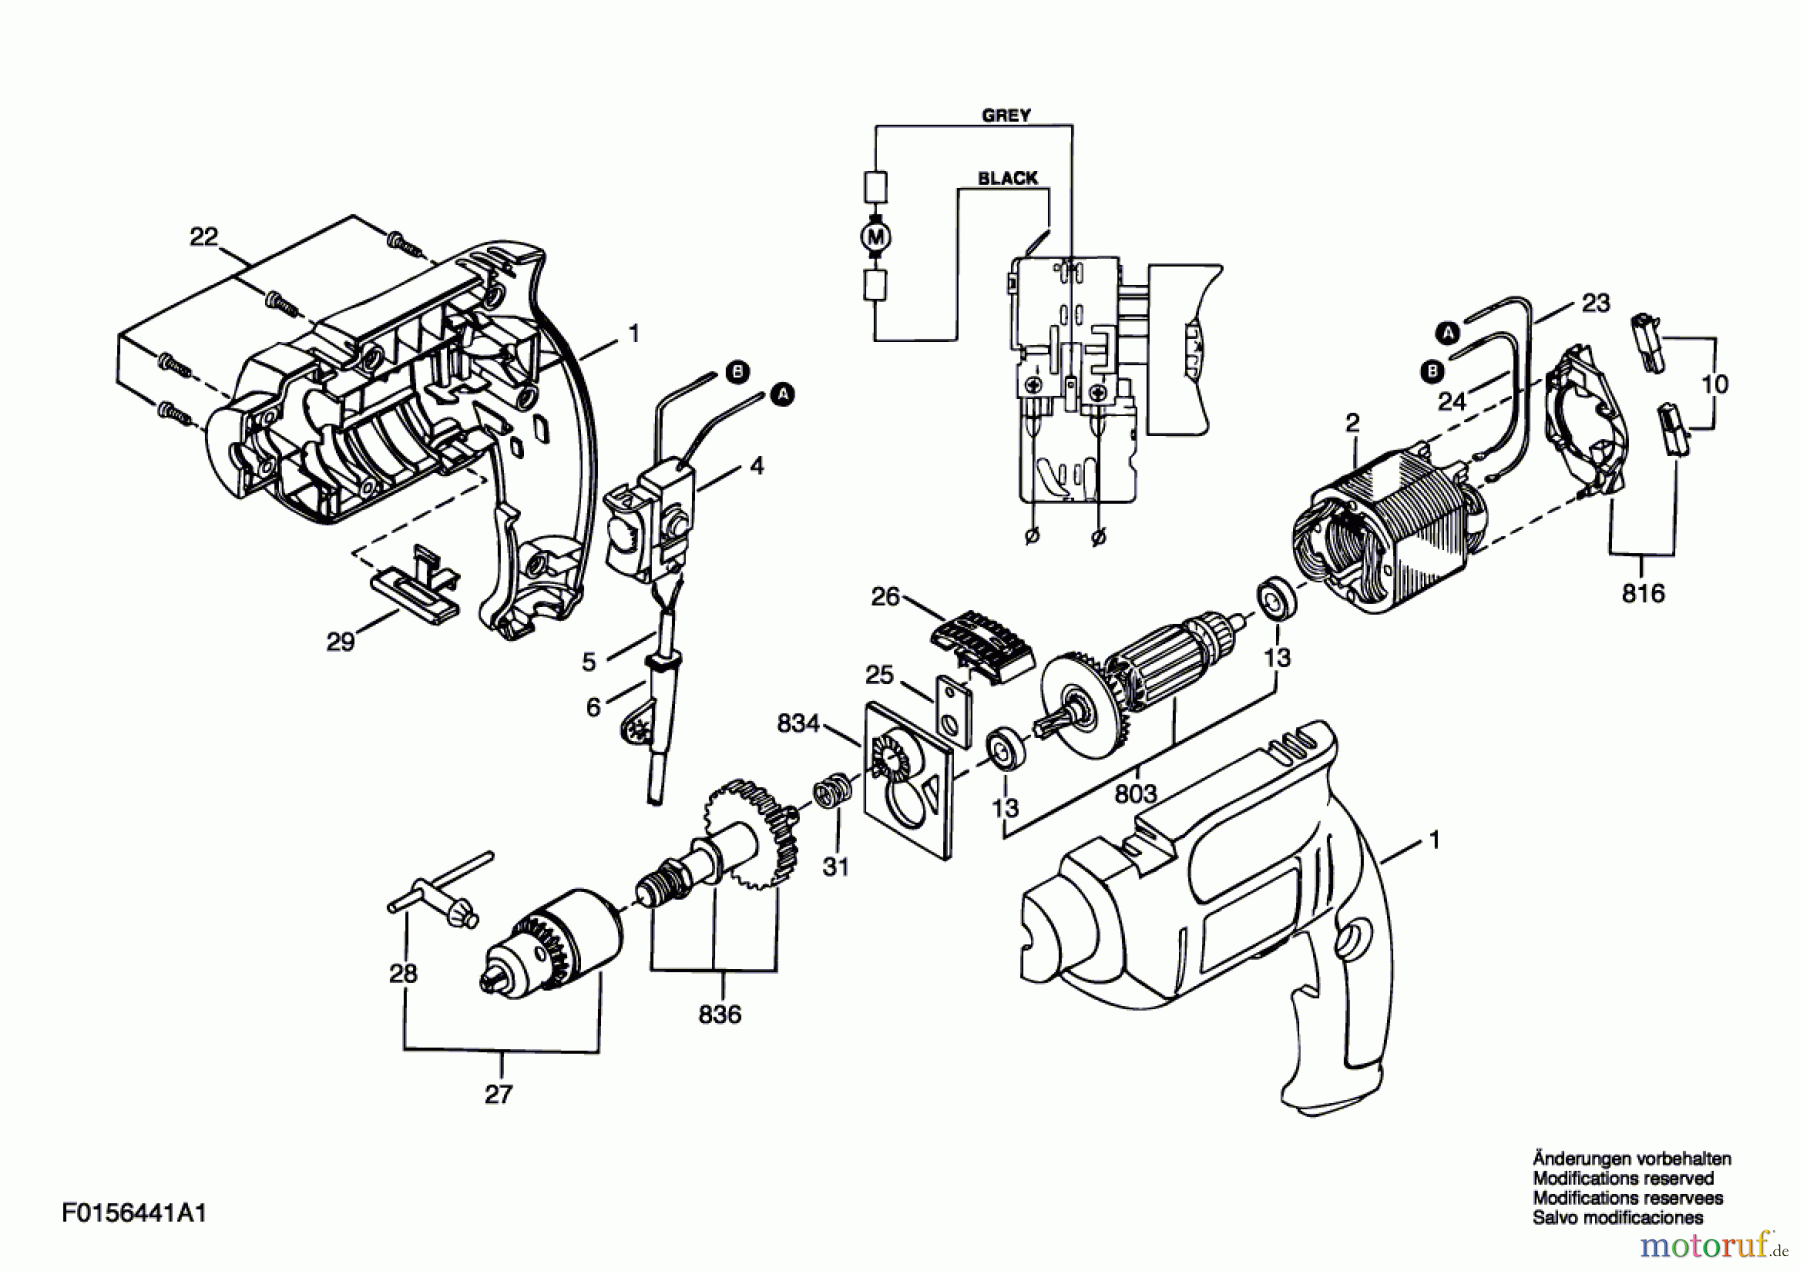  Bosch Werkzeug Drehwerkzeug 6441 H1 Seite 1